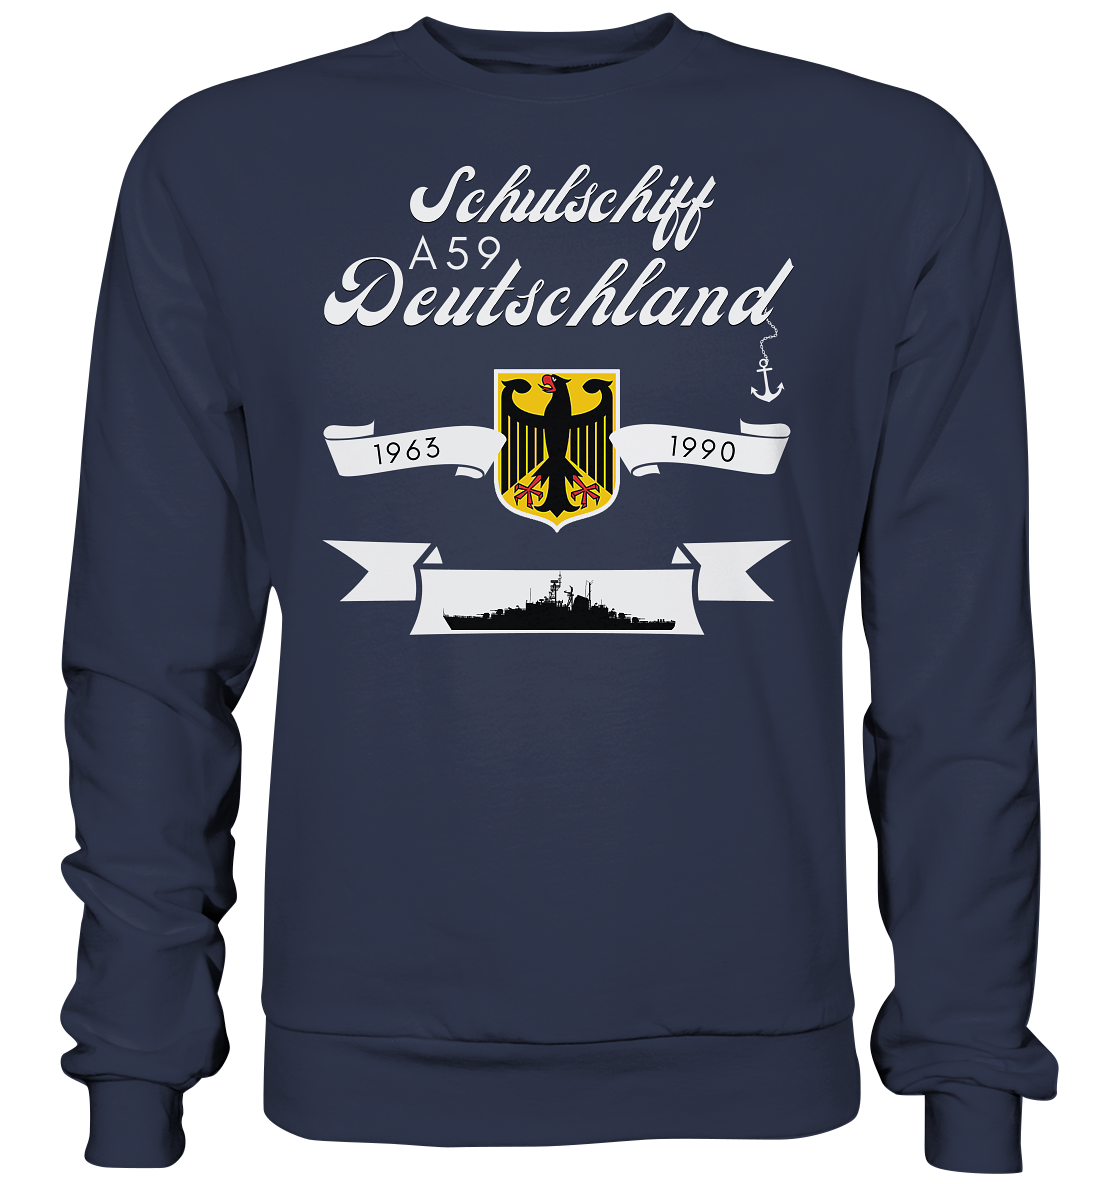 Schulschiffe A59 DEUTSCHLAND 1963-1990 - Premium Sweatshirt